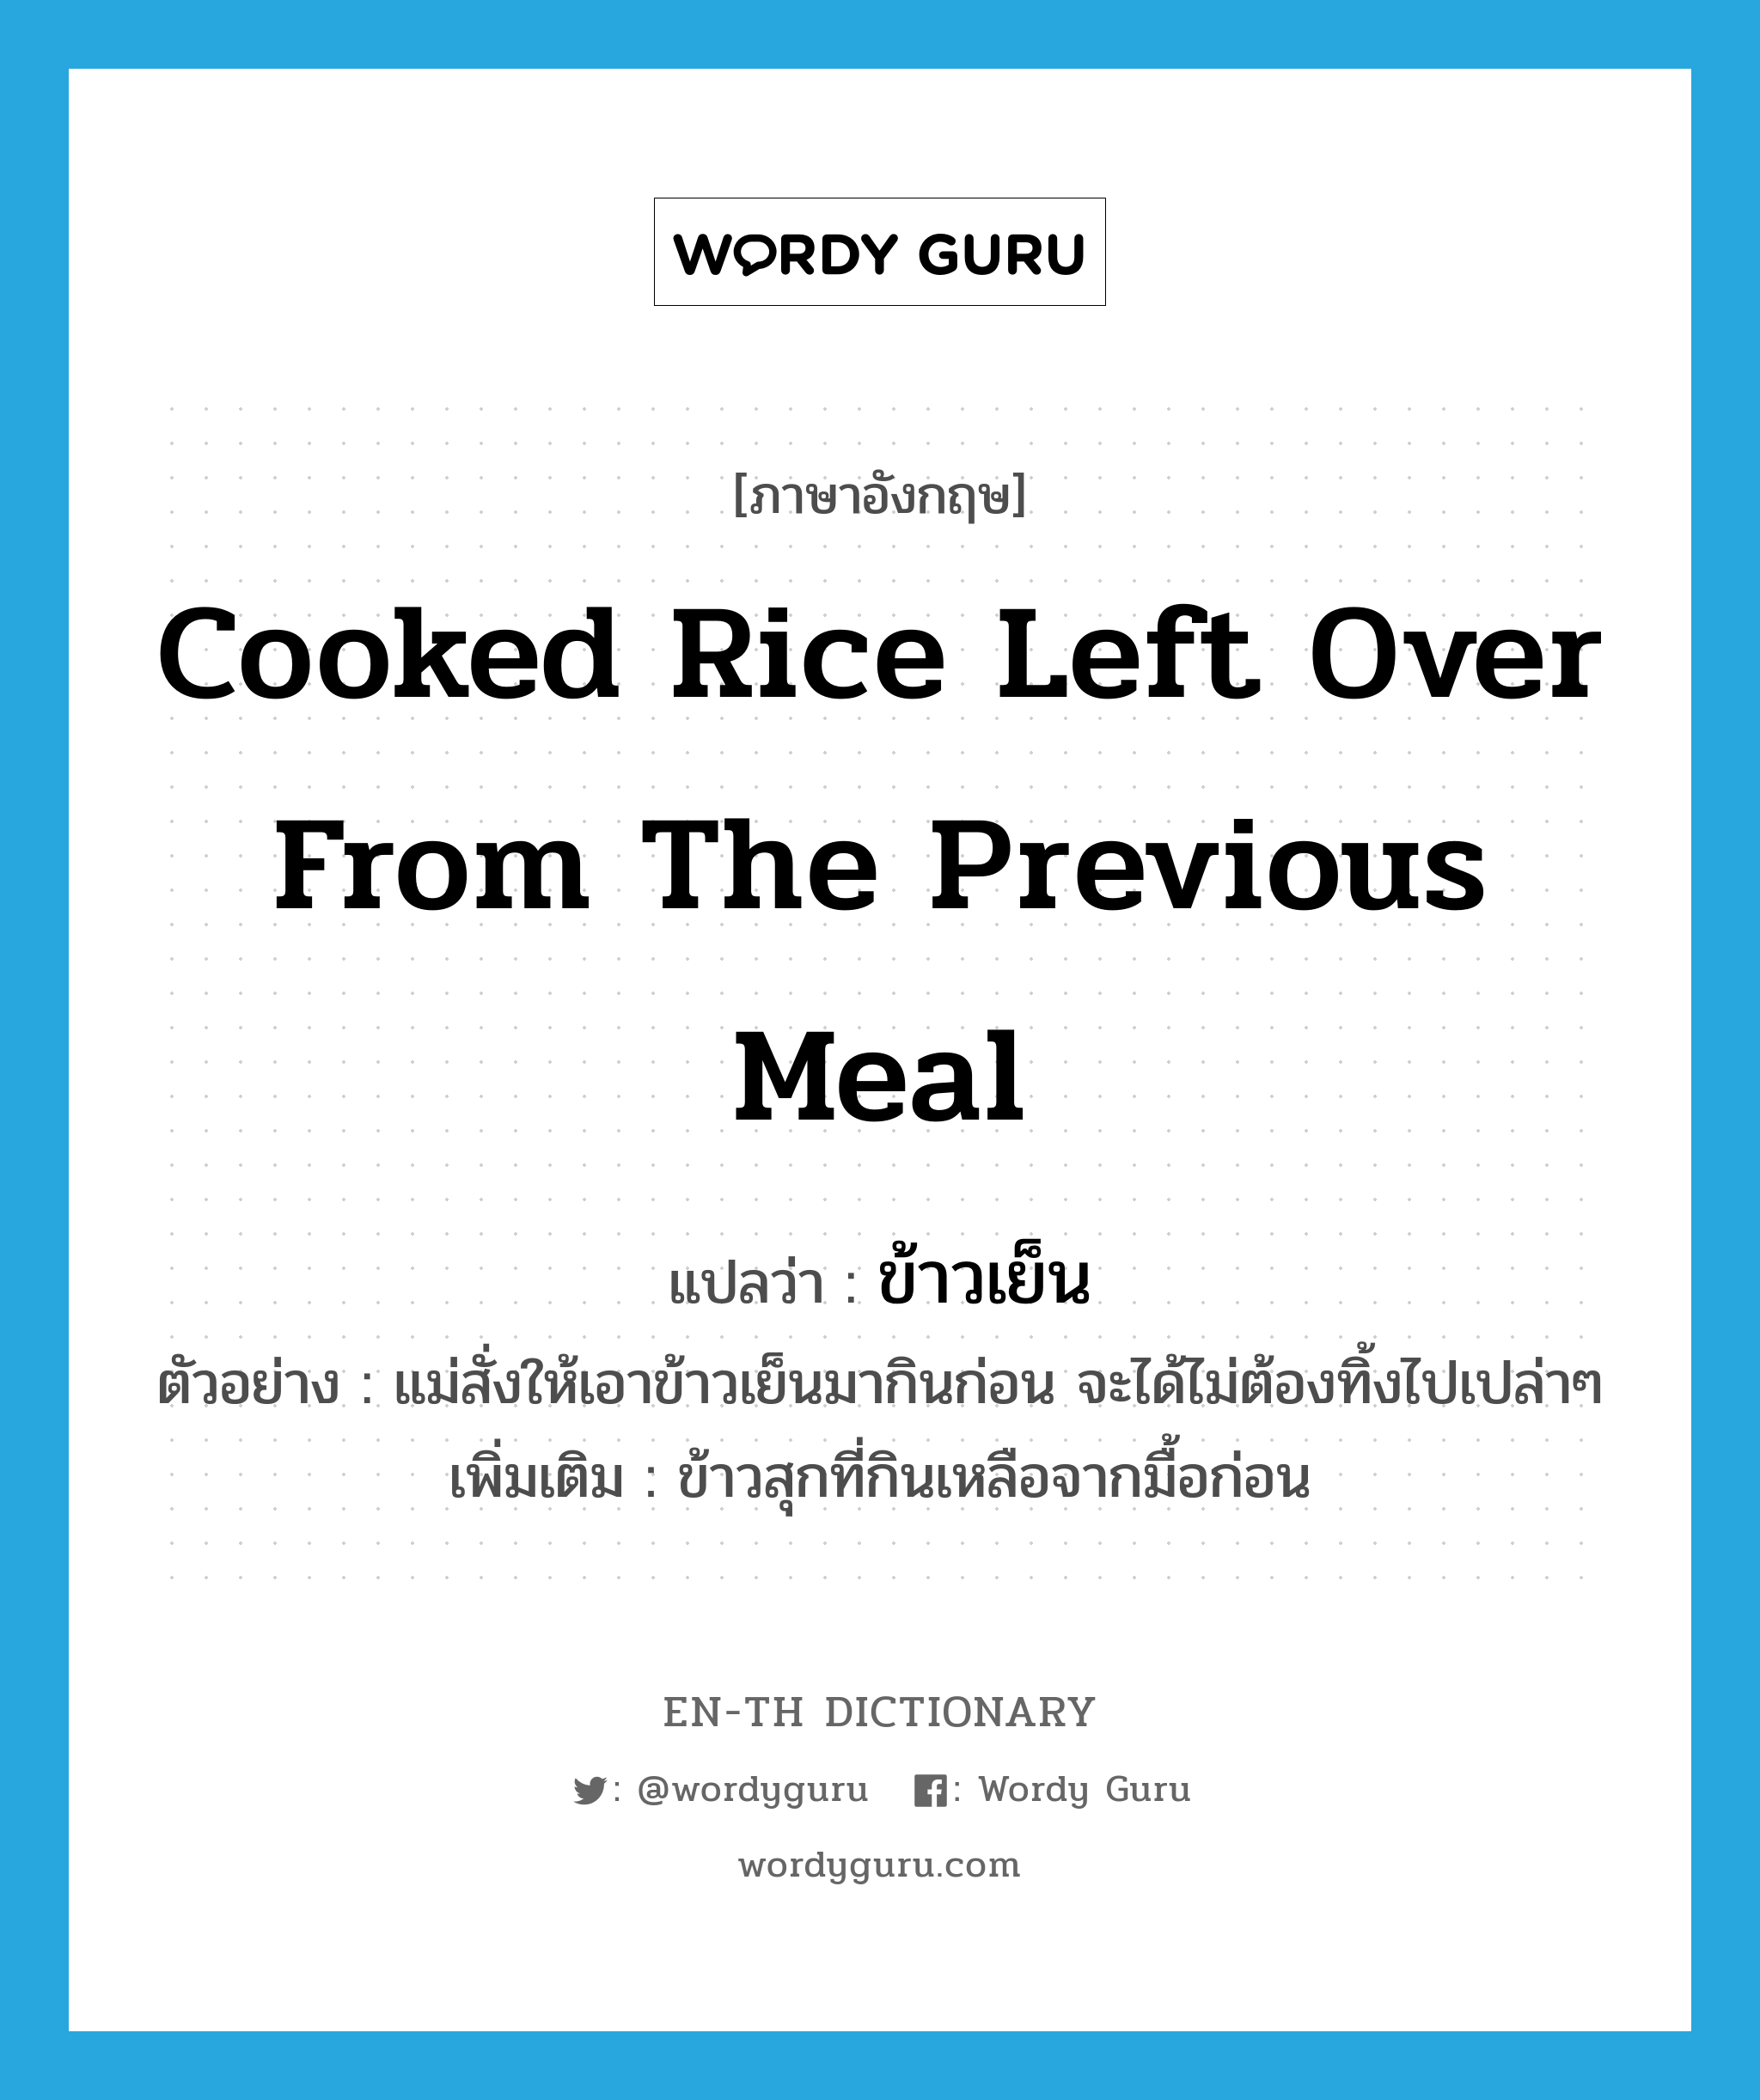 ข้าวเย็น ภาษาอังกฤษ?, คำศัพท์ภาษาอังกฤษ ข้าวเย็น แปลว่า cooked rice left over from the previous meal ประเภท N ตัวอย่าง แม่สั่งให้เอาข้าวเย็นมากินก่อน จะได้ไม่ต้องทิ้งไปเปล่าๆ เพิ่มเติม ข้าวสุกที่กินเหลือจากมื้อก่อน หมวด N